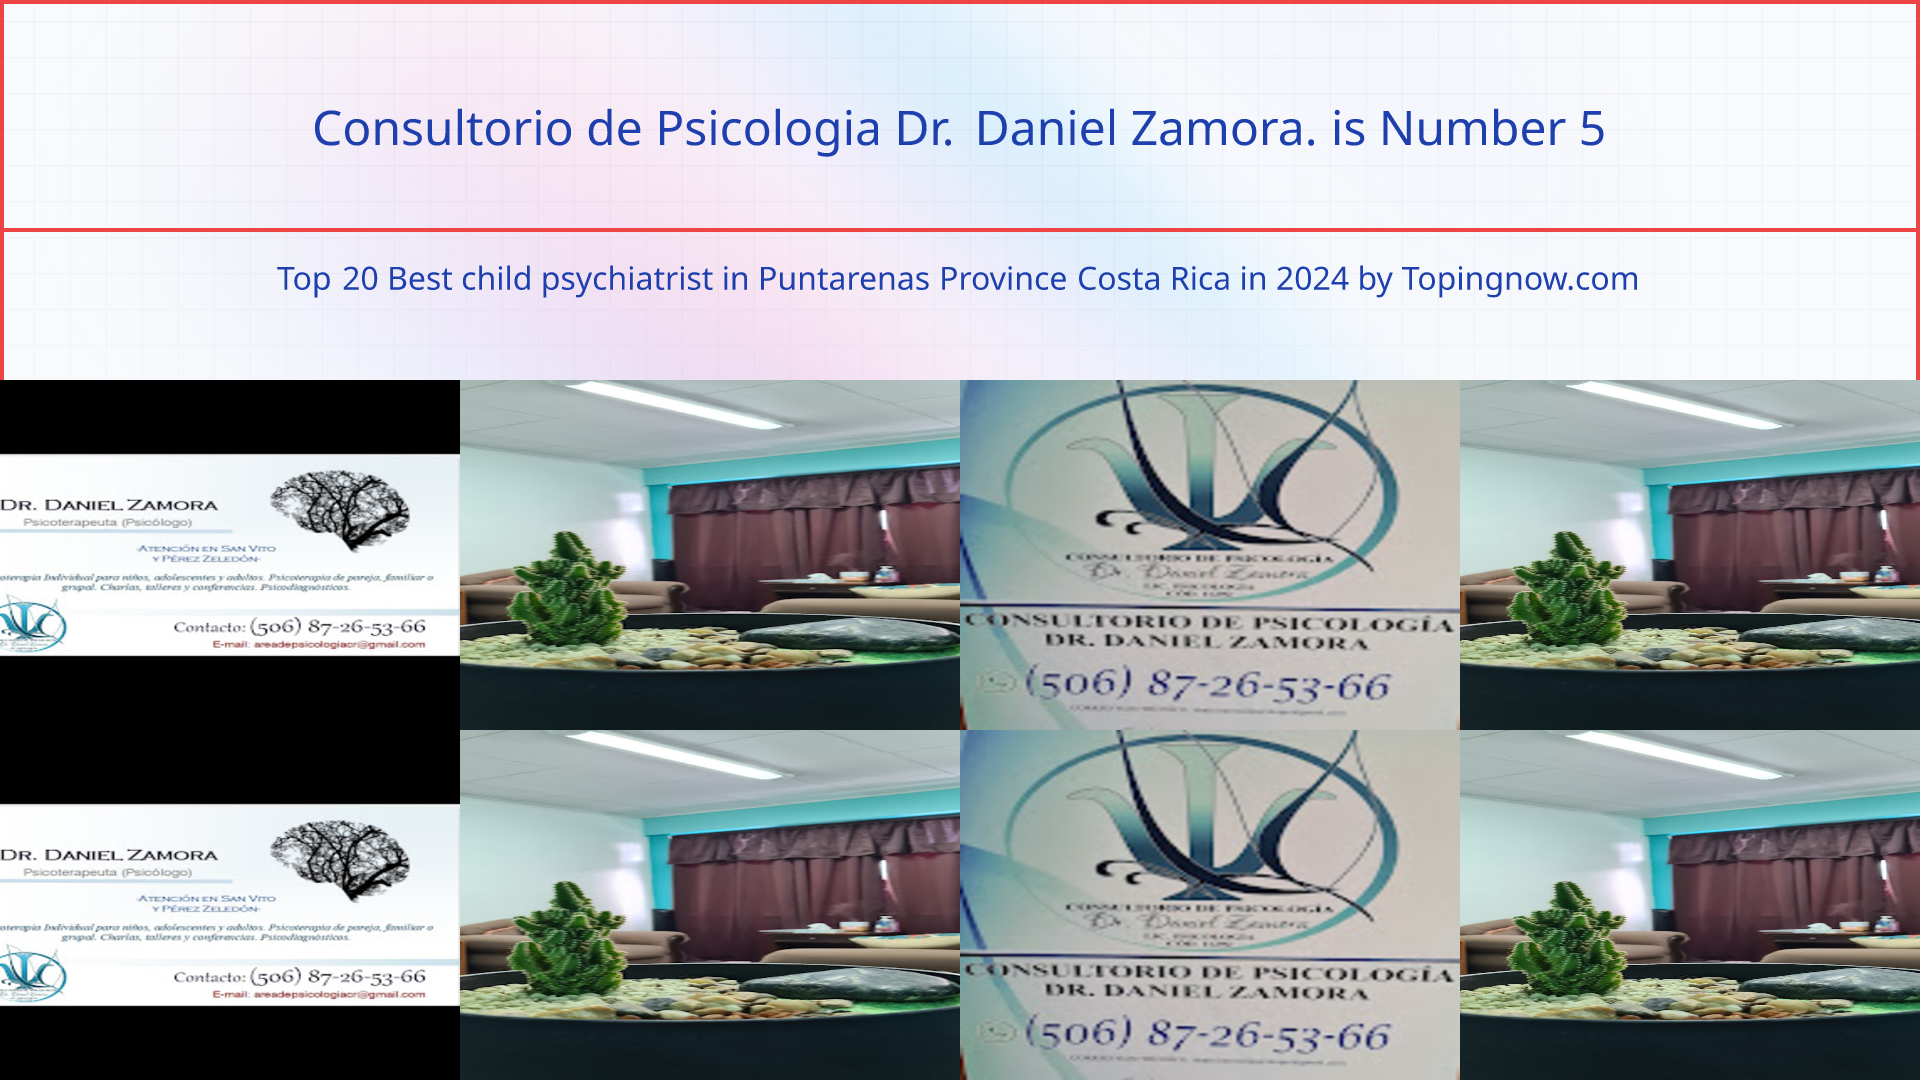 Consultorio de Psicologia Dr. Daniel Zamora.: Top 20 Best child psychiatrist in Puntarenas Province Costa Rica in 2024